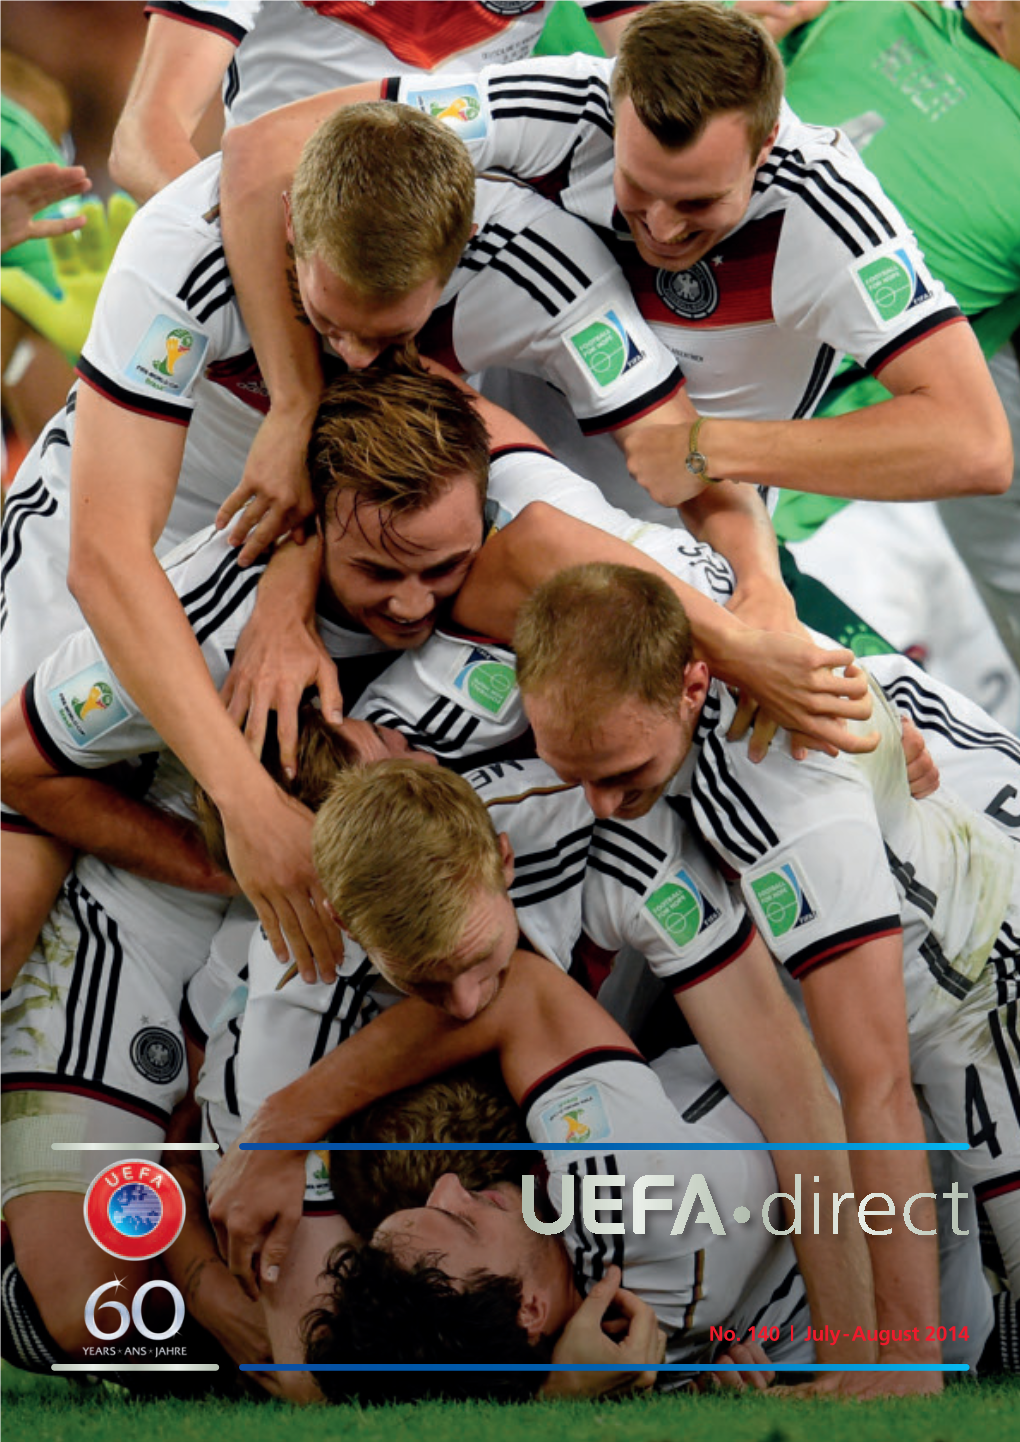 UEFA"Direct #140 (07-08.2014)